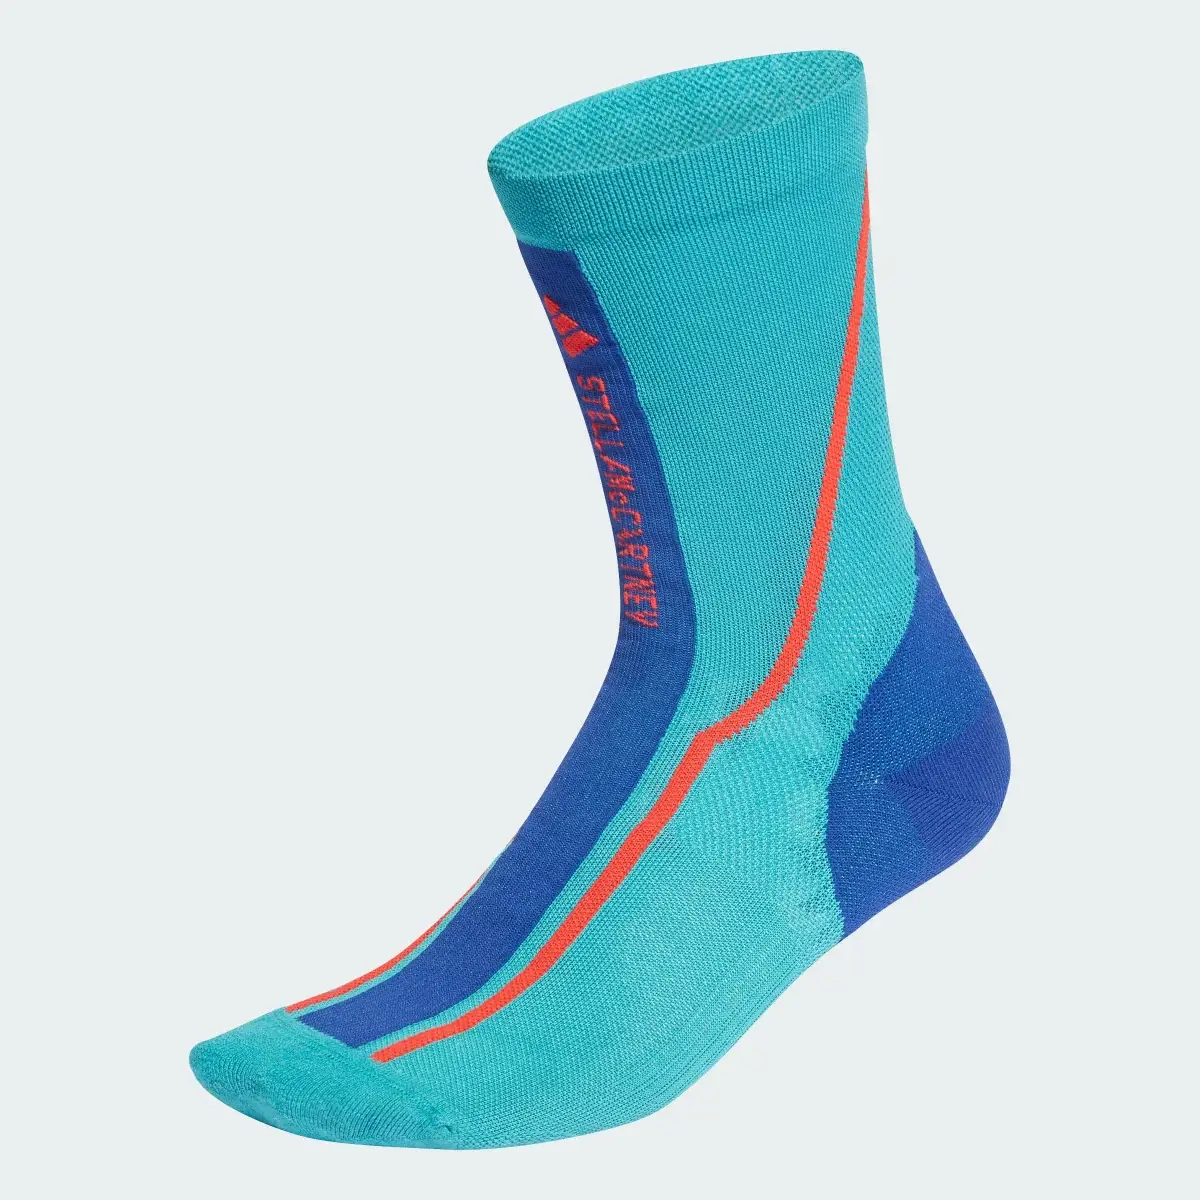 Adidas by Stella McCartney Crew Socks. 2